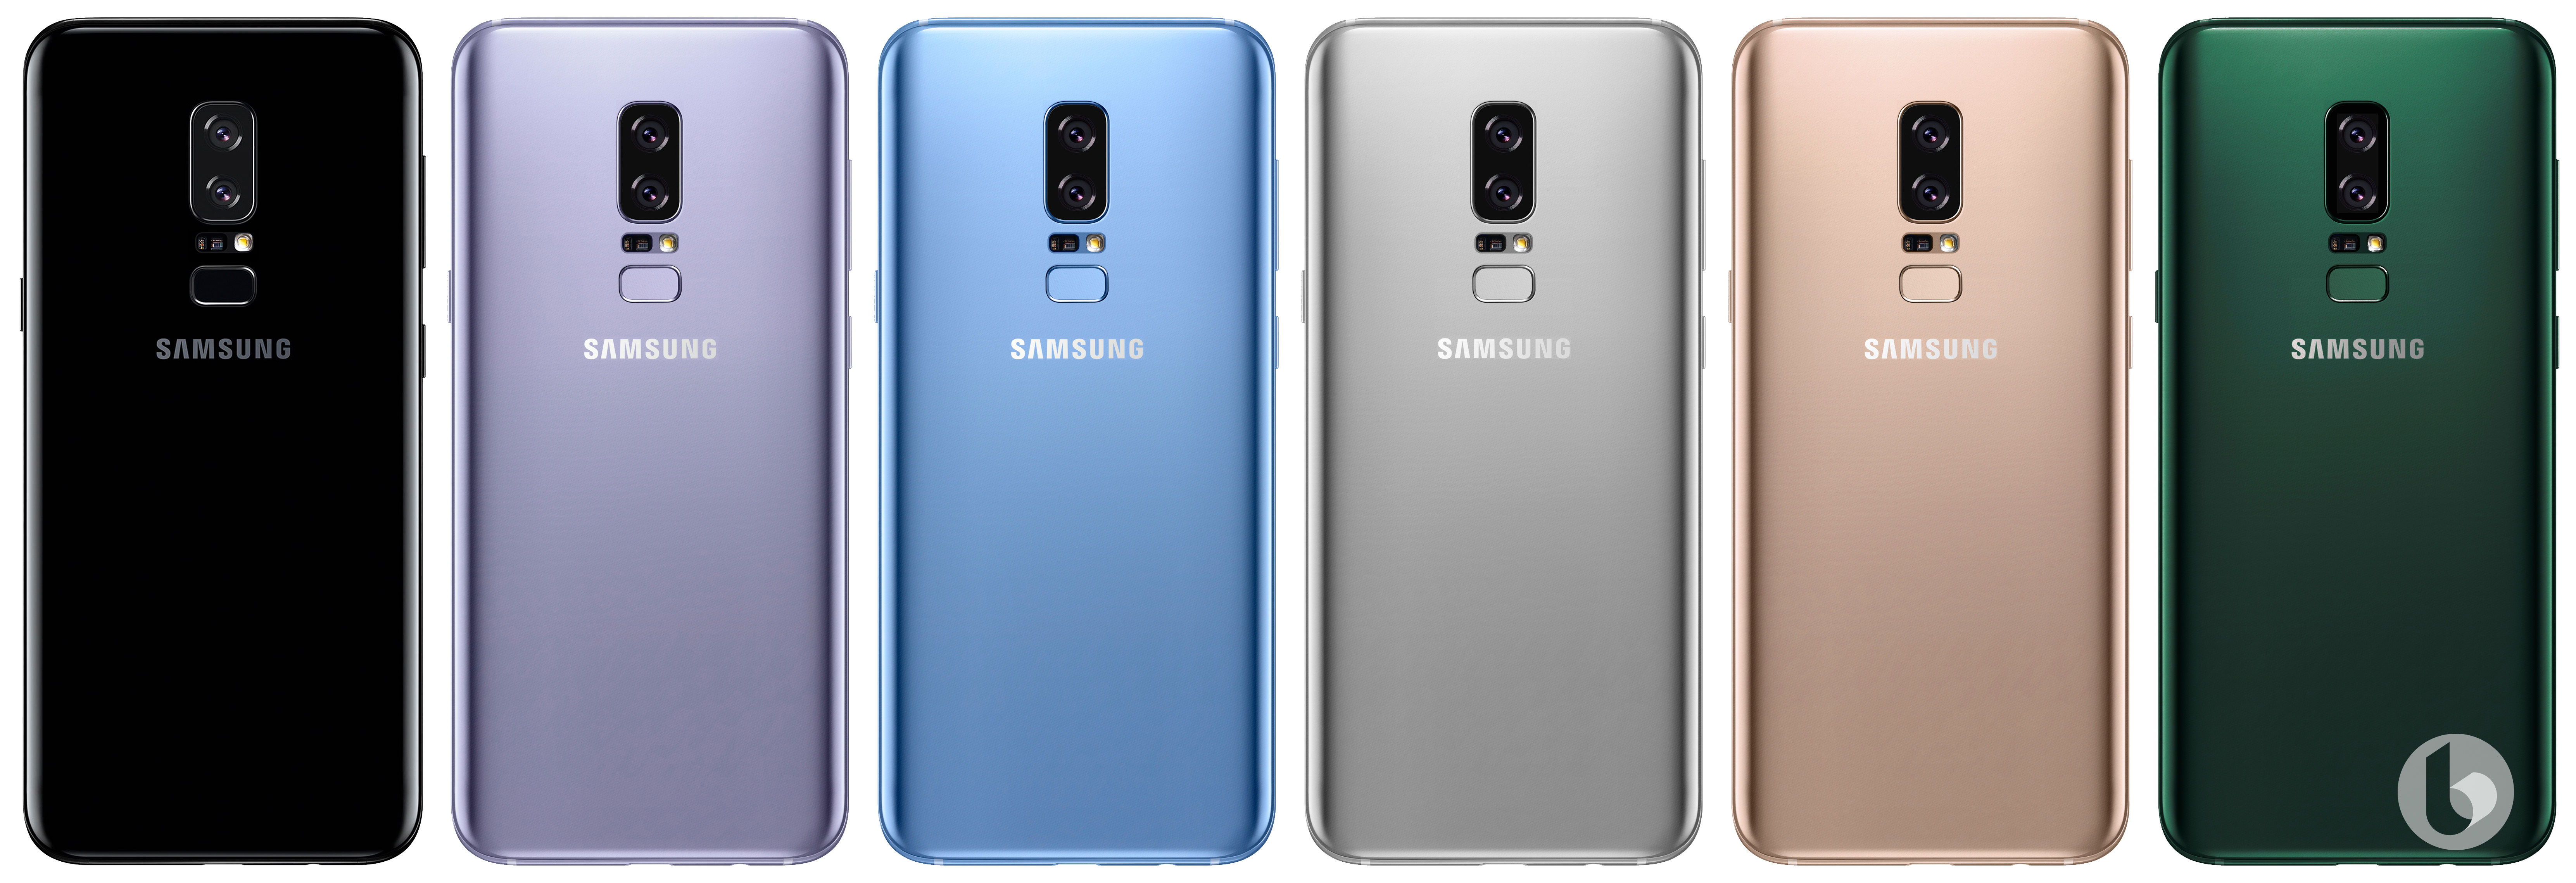 Samsung Galaxy Note 8 colorazioni